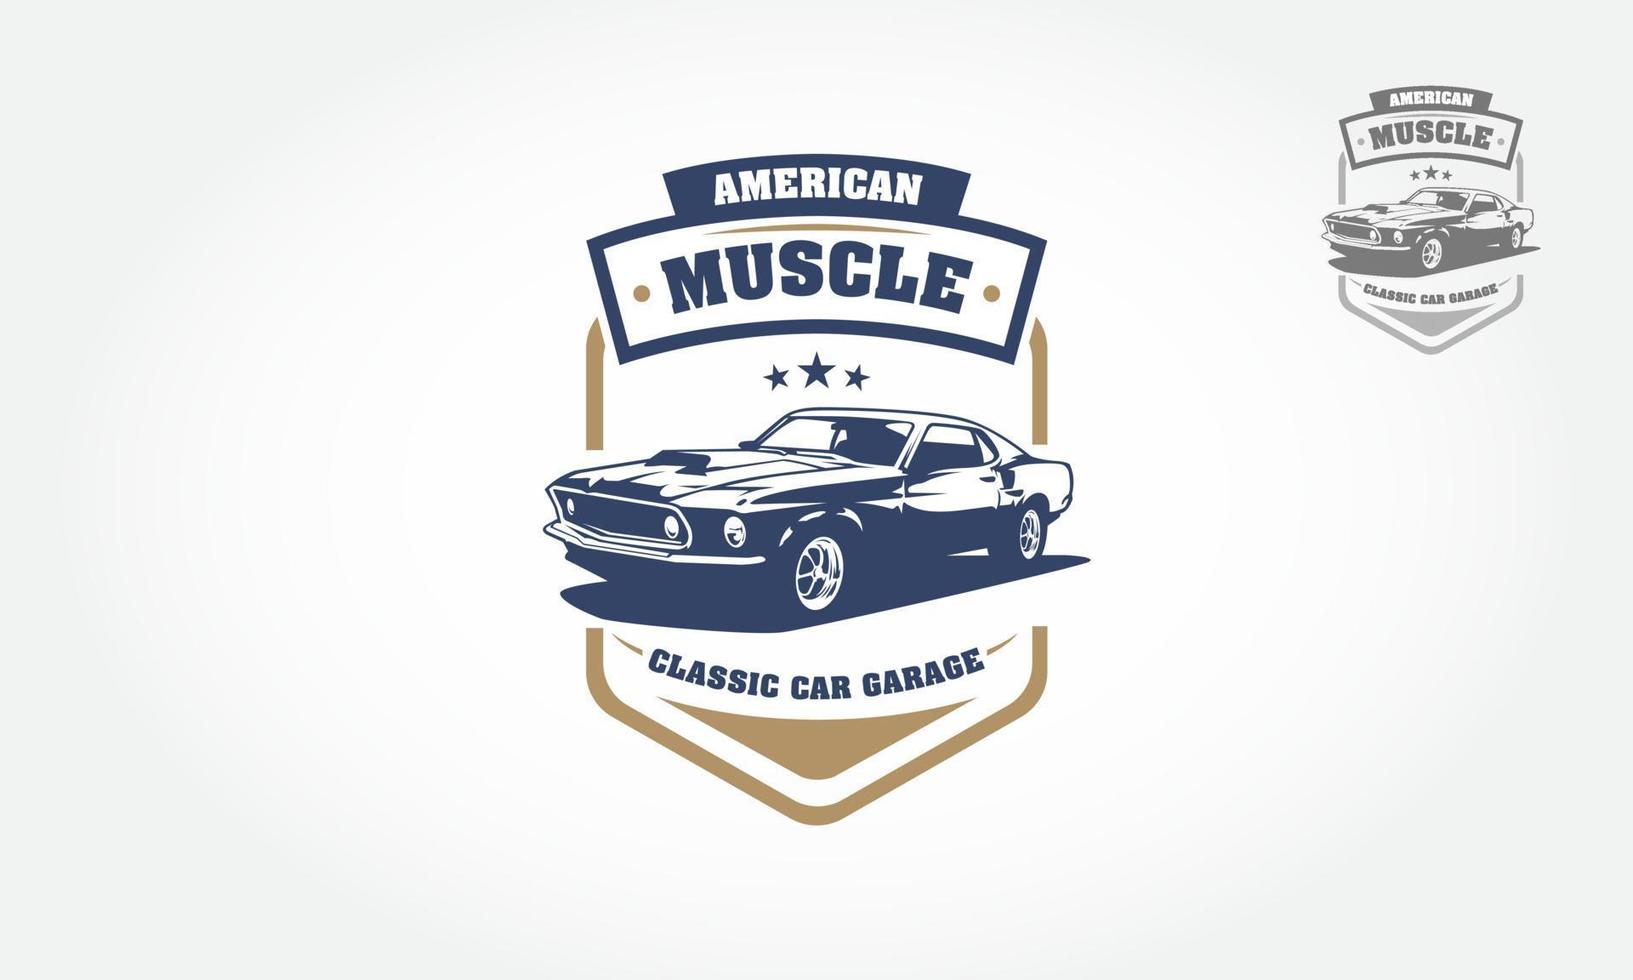 design de logotipo de garagem de carro clássico de músculo americano. este logotipo pode ser usado para garagem de carros de estilo antigo ou clássico, lojas, reparos, restaurações. vetor